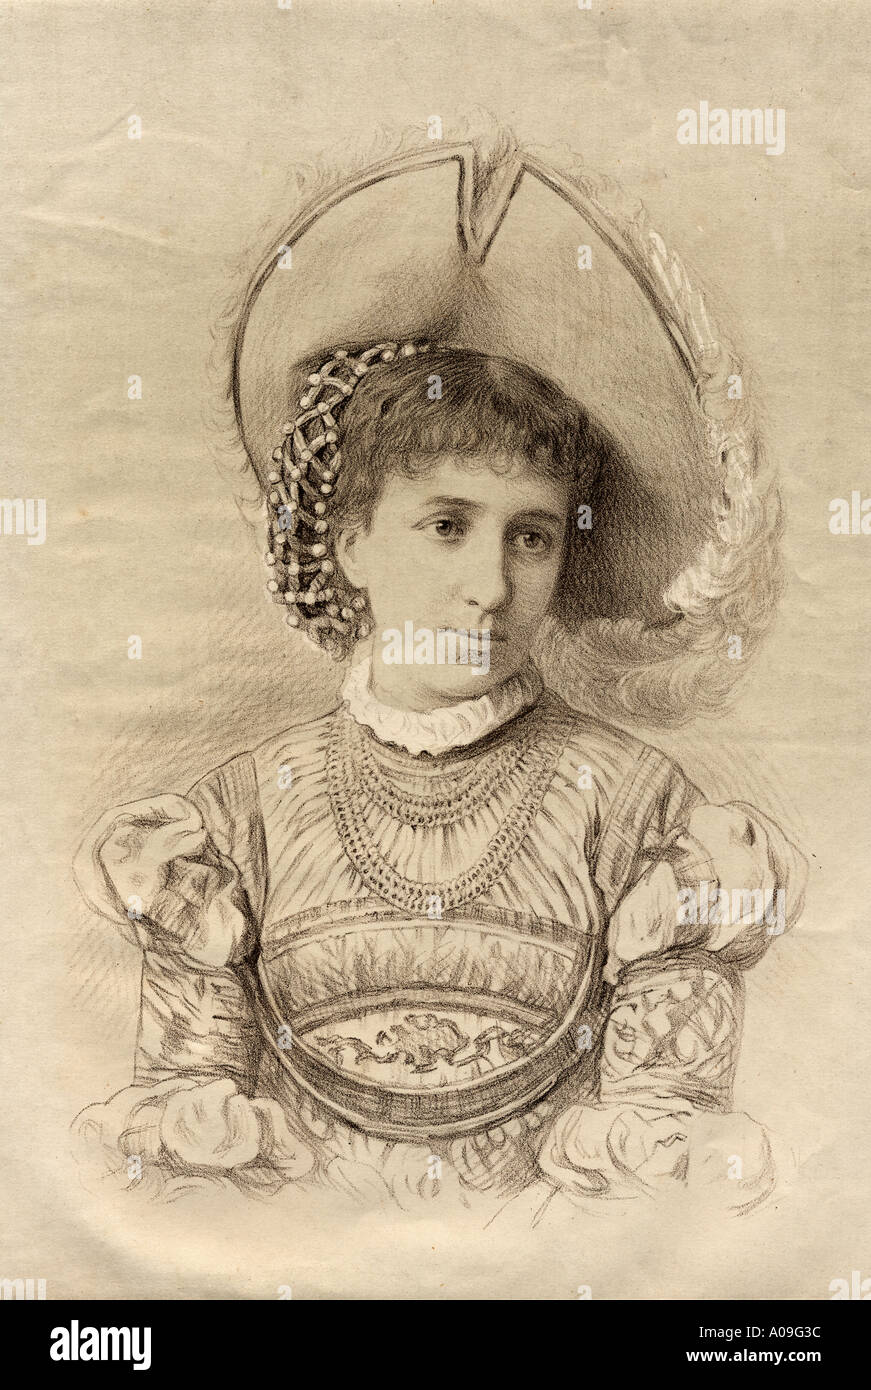 Maria Cristina Deseada Enriqueta Felicidad Raniera de Habsburgo Lorena, 1858-1929. Erzherzogin von Österreich und Königin von Spanien als der Ehefrau von Alfonso XI. Stockfoto